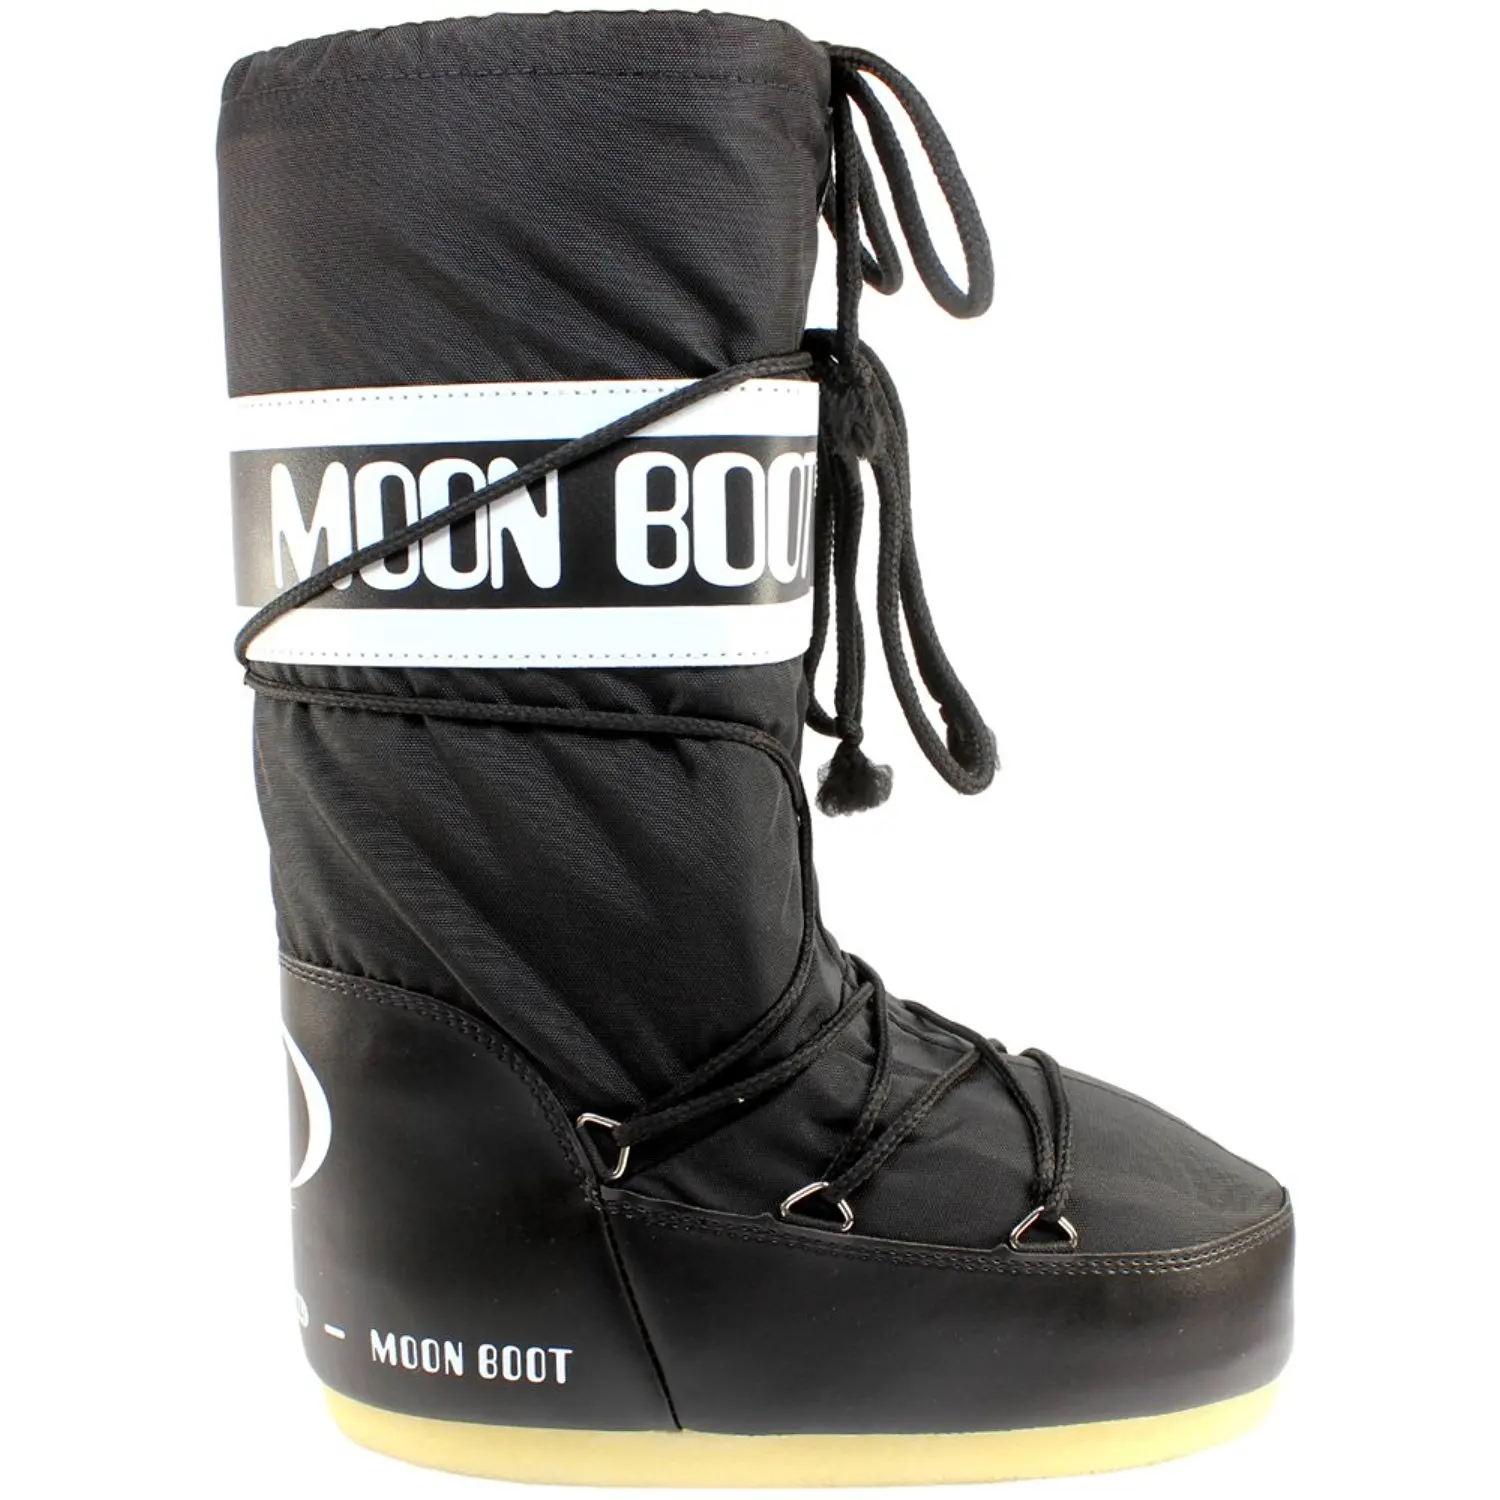 Нейлон сапоги. Сапоги Moon Boot. Зимние ботинки Moon Boot. Сапоги Moon Boot женские. Зимние ботинки Moon Boot nylon.